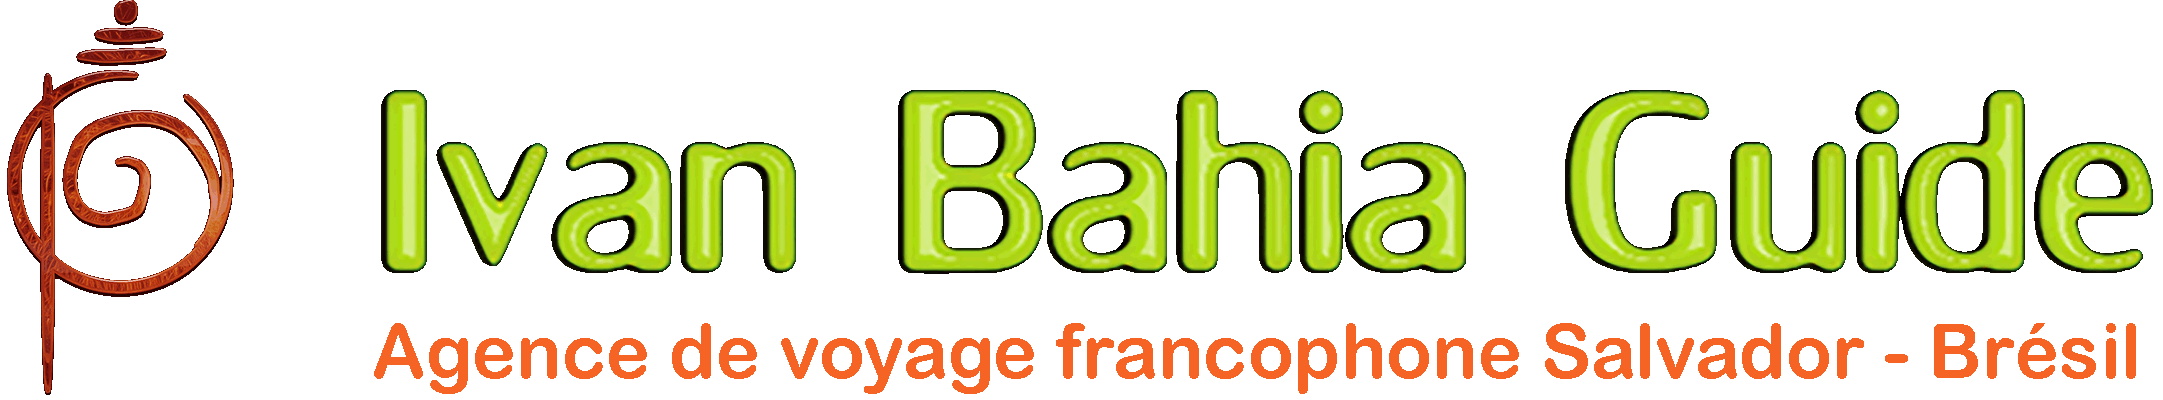 logo Bahia Guide Ivan